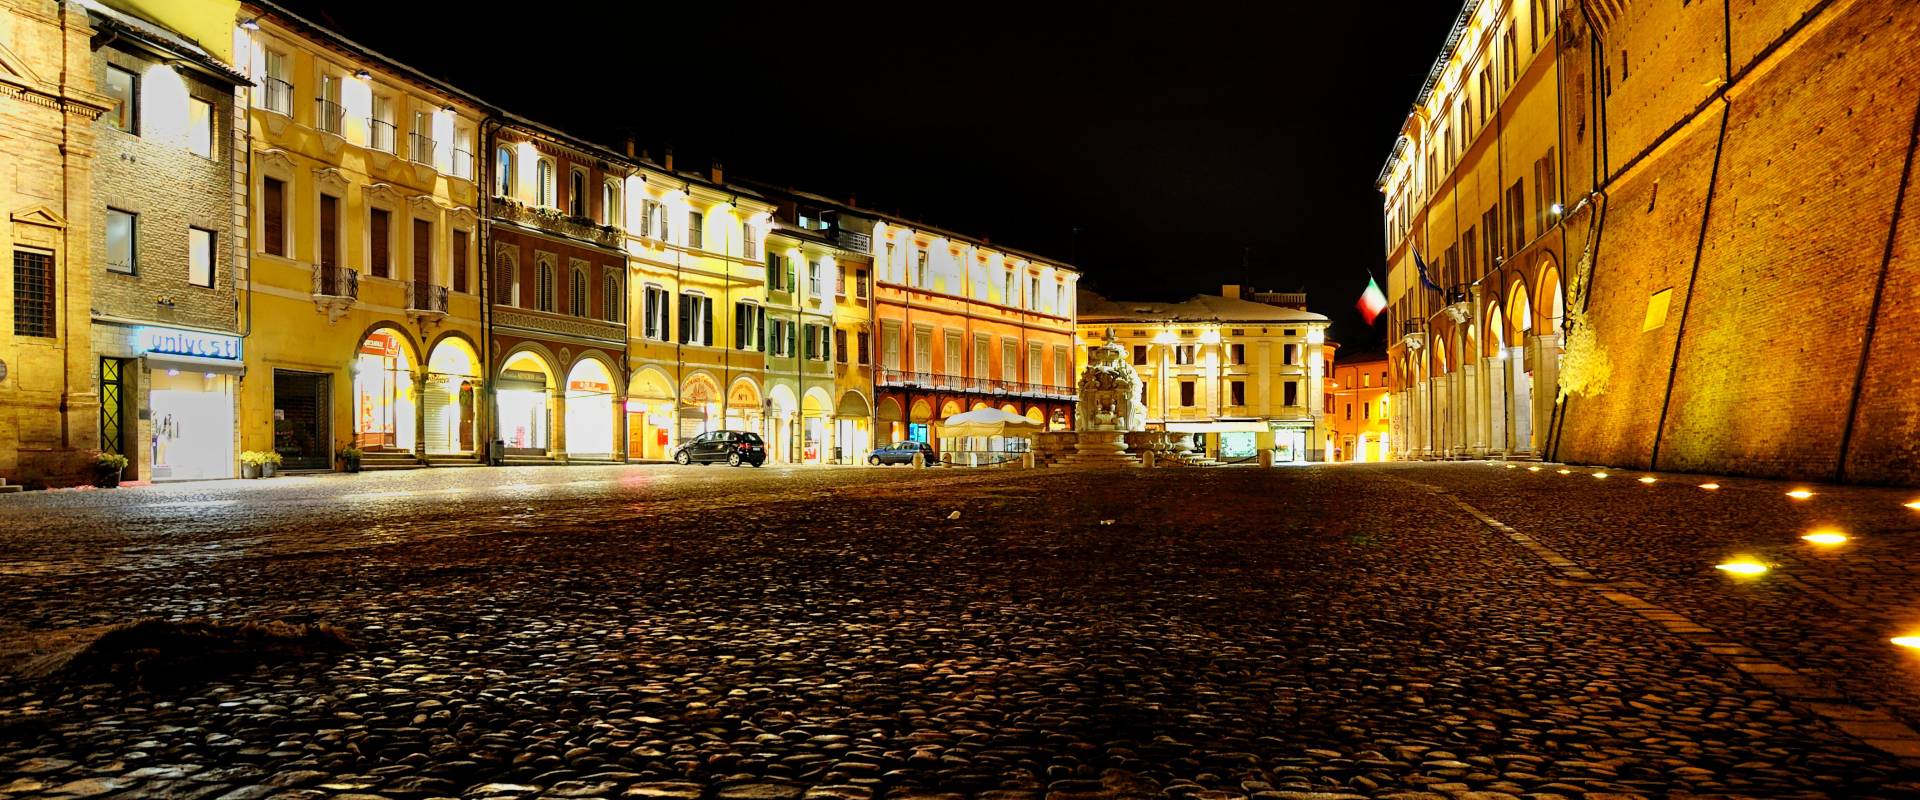 Piazza del Popolo di fianco al palazzo Albornoz foto di Masarot